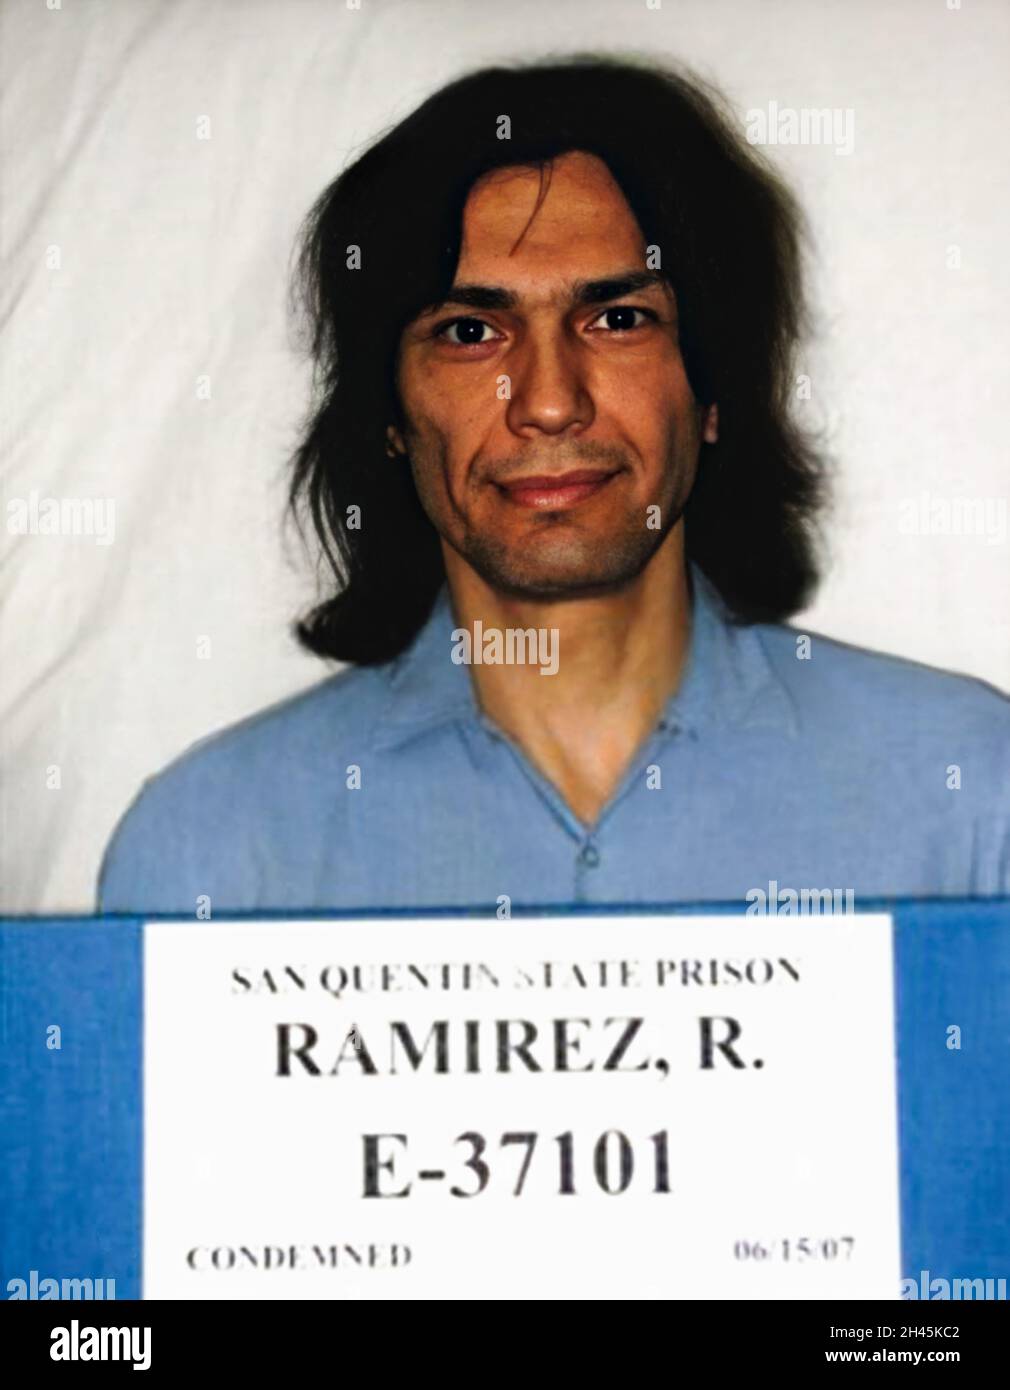 2007 , 15 giugno , SAN QUENTIN , USA : il serial killer satanista RICHARD RAMIREZ ( 1960 - 2013 ) di 47 anni, nato Ricardo Leyva Munoz Ramírez . Mugshot di San Quentin state Prison . Ramirez ' The Night Stalker ' era anche stupratore seriale , rapinatore , molestatore bambino e burglar , era un killer americano che uccise almeno 13 persone , dal 17 marzo al 31 agosto 1985 . Fotografo sconosciuto .- MUG SHOT - MUG-SHOT - SERIAL KILLER - ritratto - ritratto - serial-killer - assassino seriale - CRONACA nera - criminale - criminale - SERIAL KILLER - foto segnaletica della Politica - SATANISMO - SATANI Foto Stock